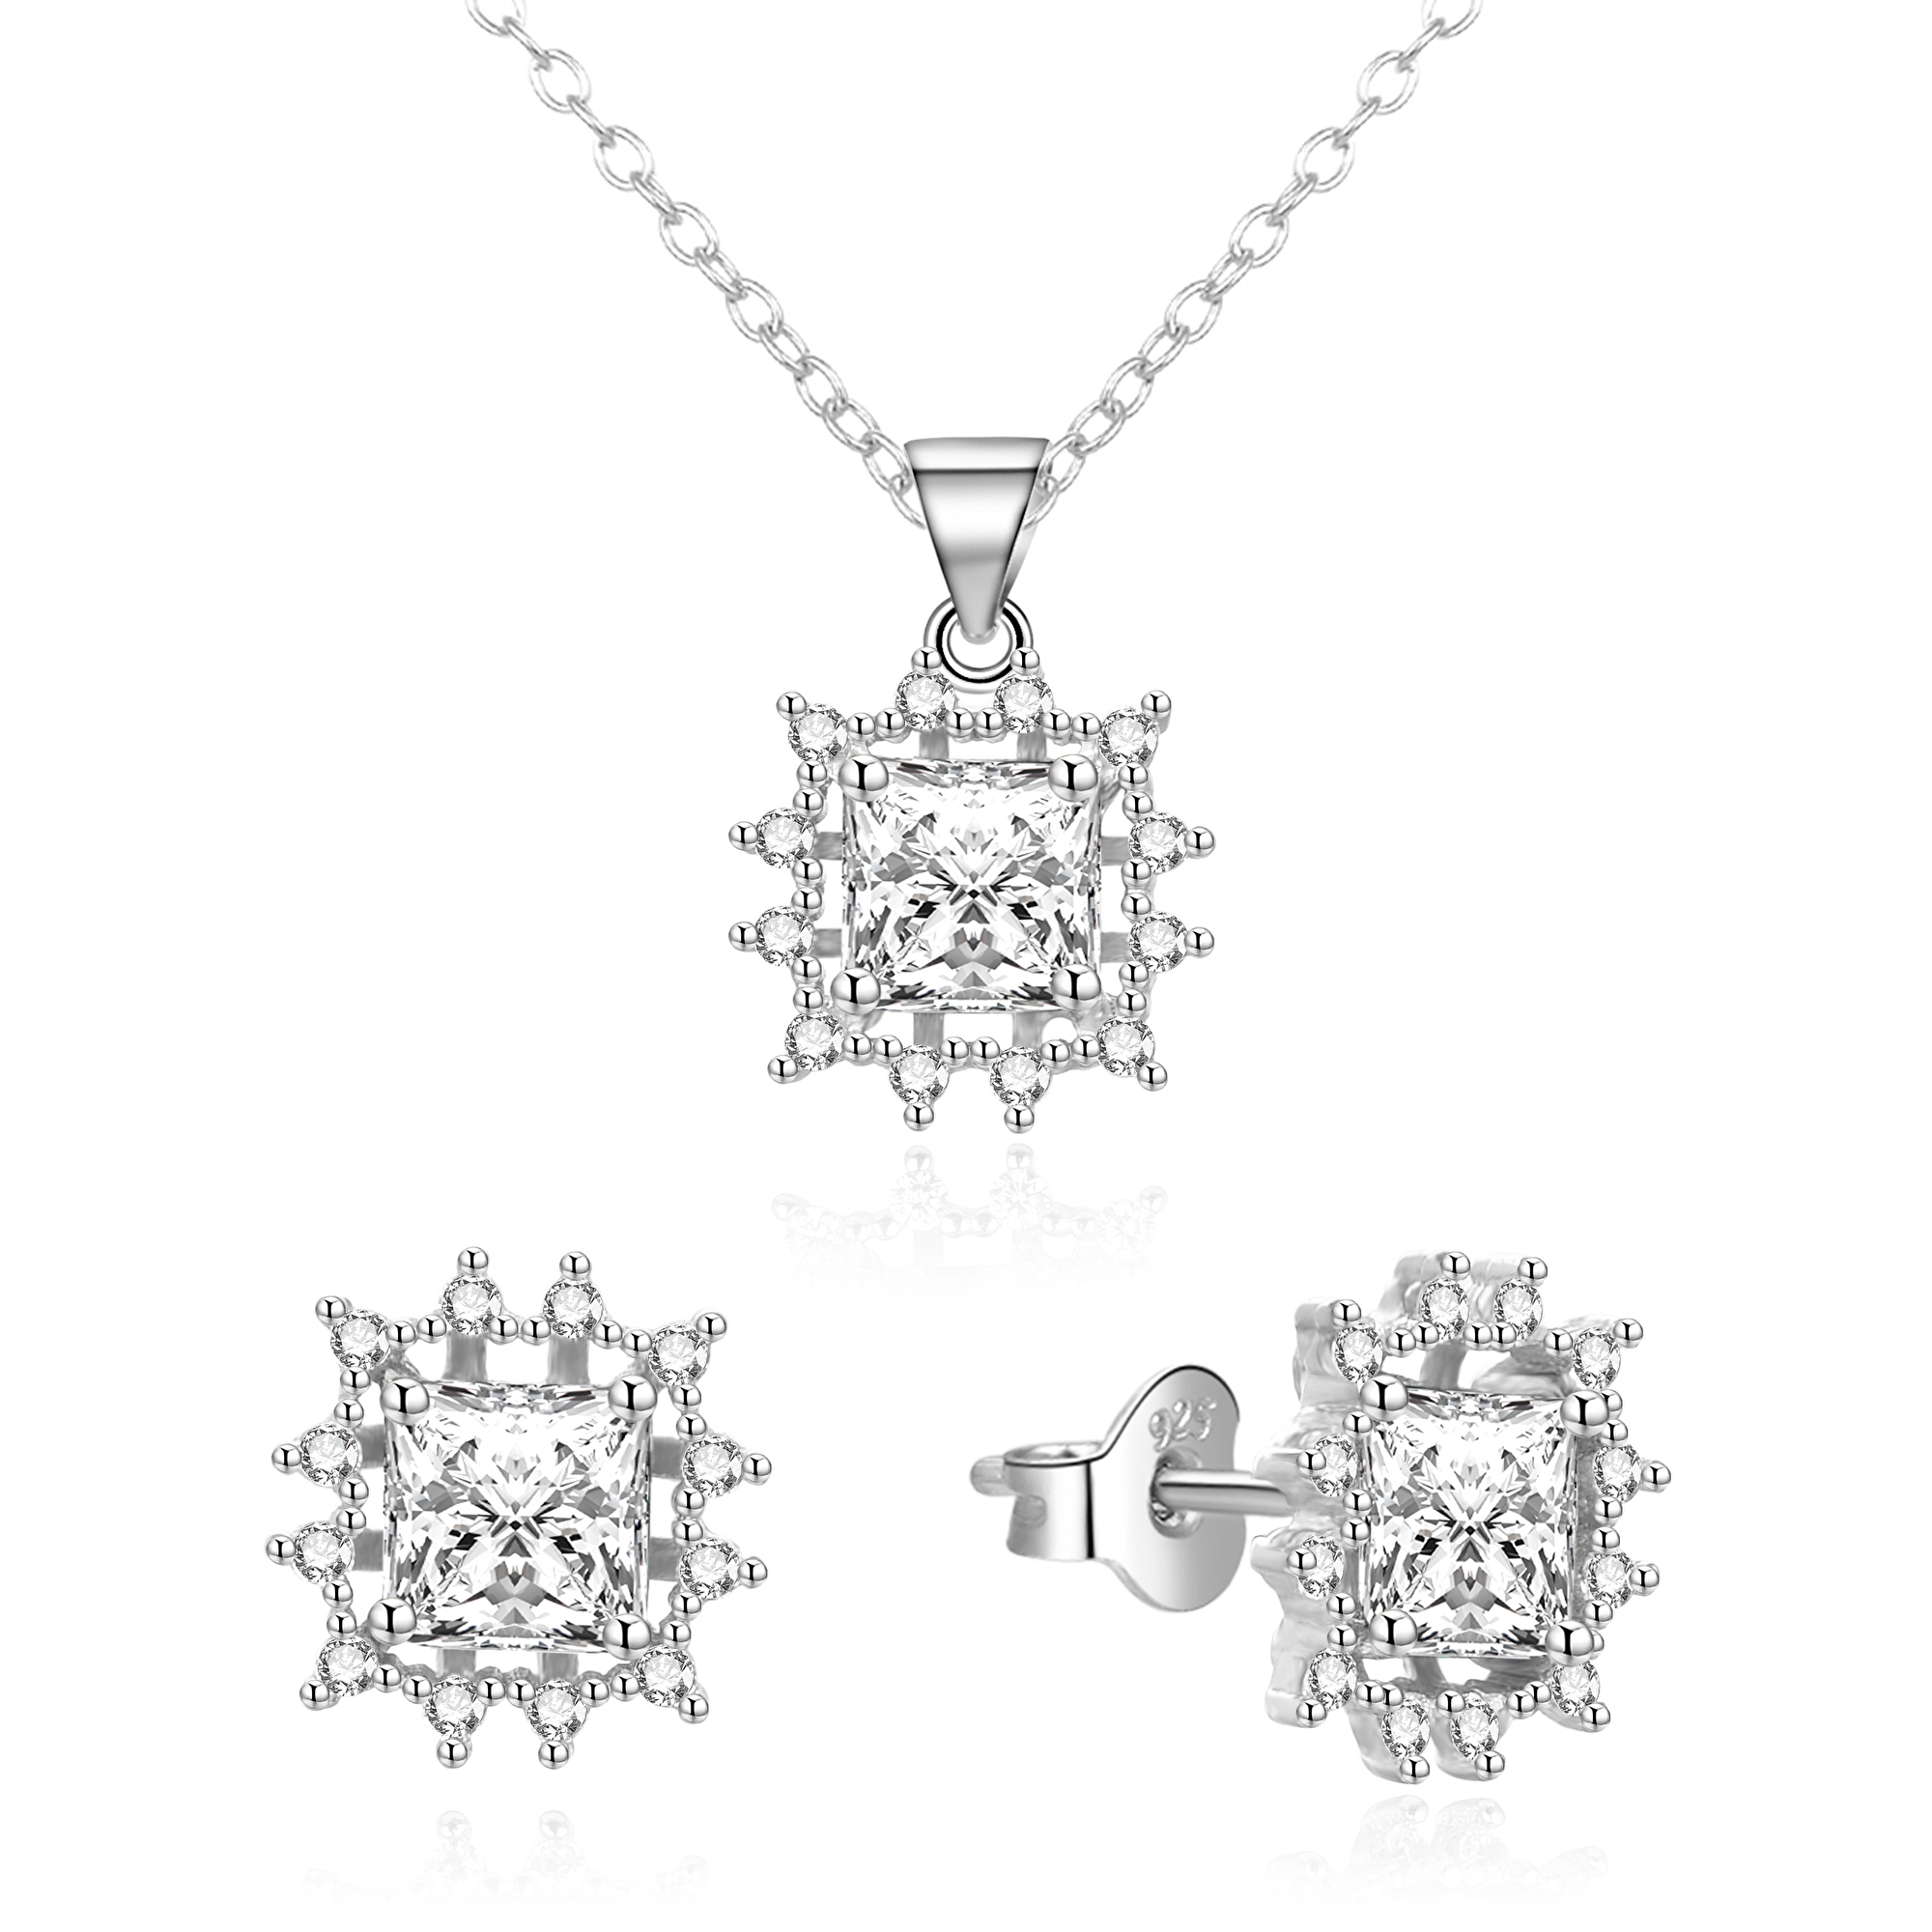 Agato Půvabná stříbrná sada šperku se zirkony AGSET363R-W (řetízek, přívěsek, náušnice)